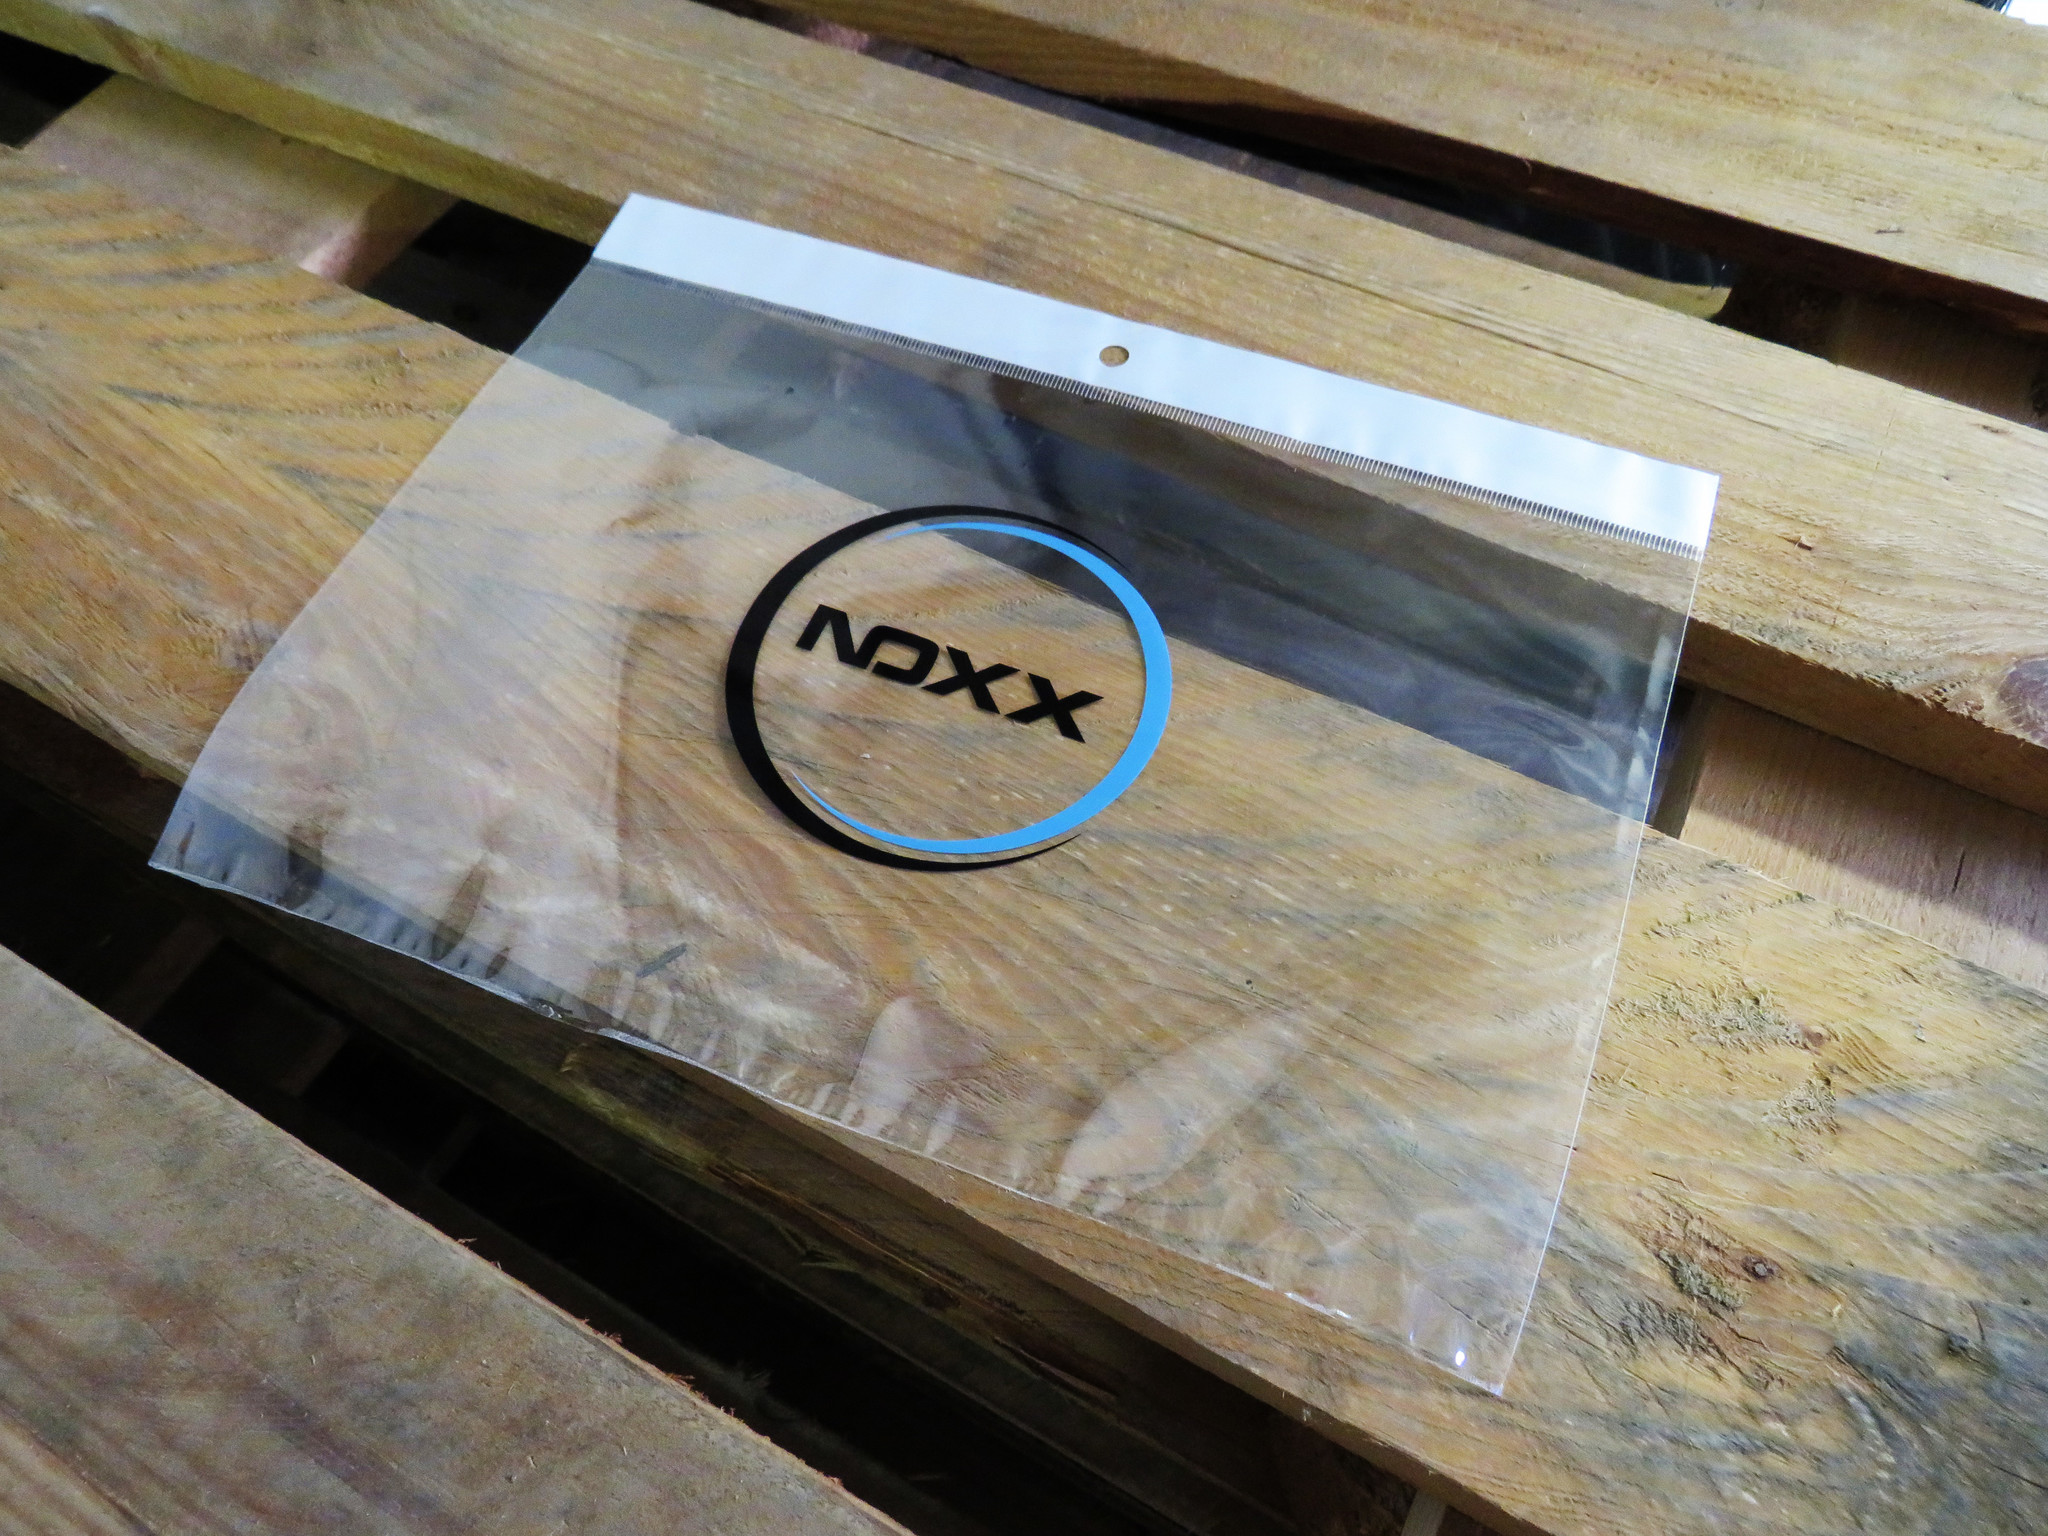 NoXx Samsung Galaxy Tab A8 2021 Hoesje Case Hard Cover 360 Draaibaar - Rose Goud